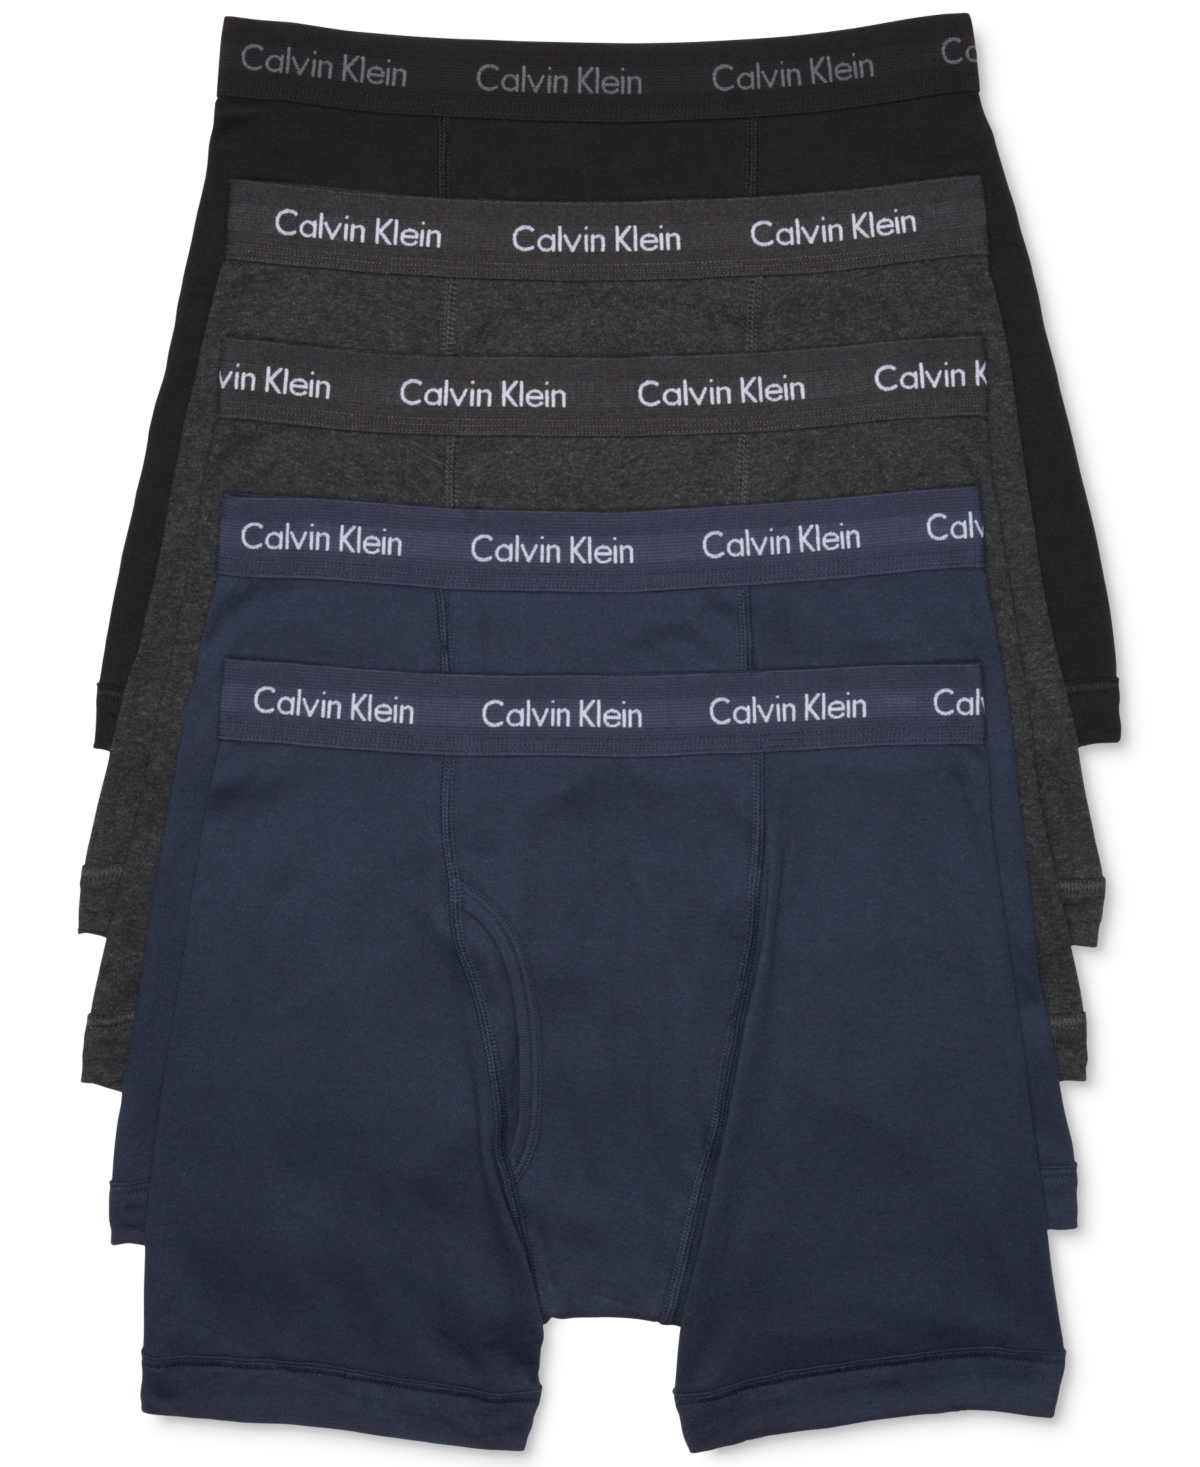 Calvin Klein Men's 5-Pack Cotton Classic Boxer Briefs Underwear